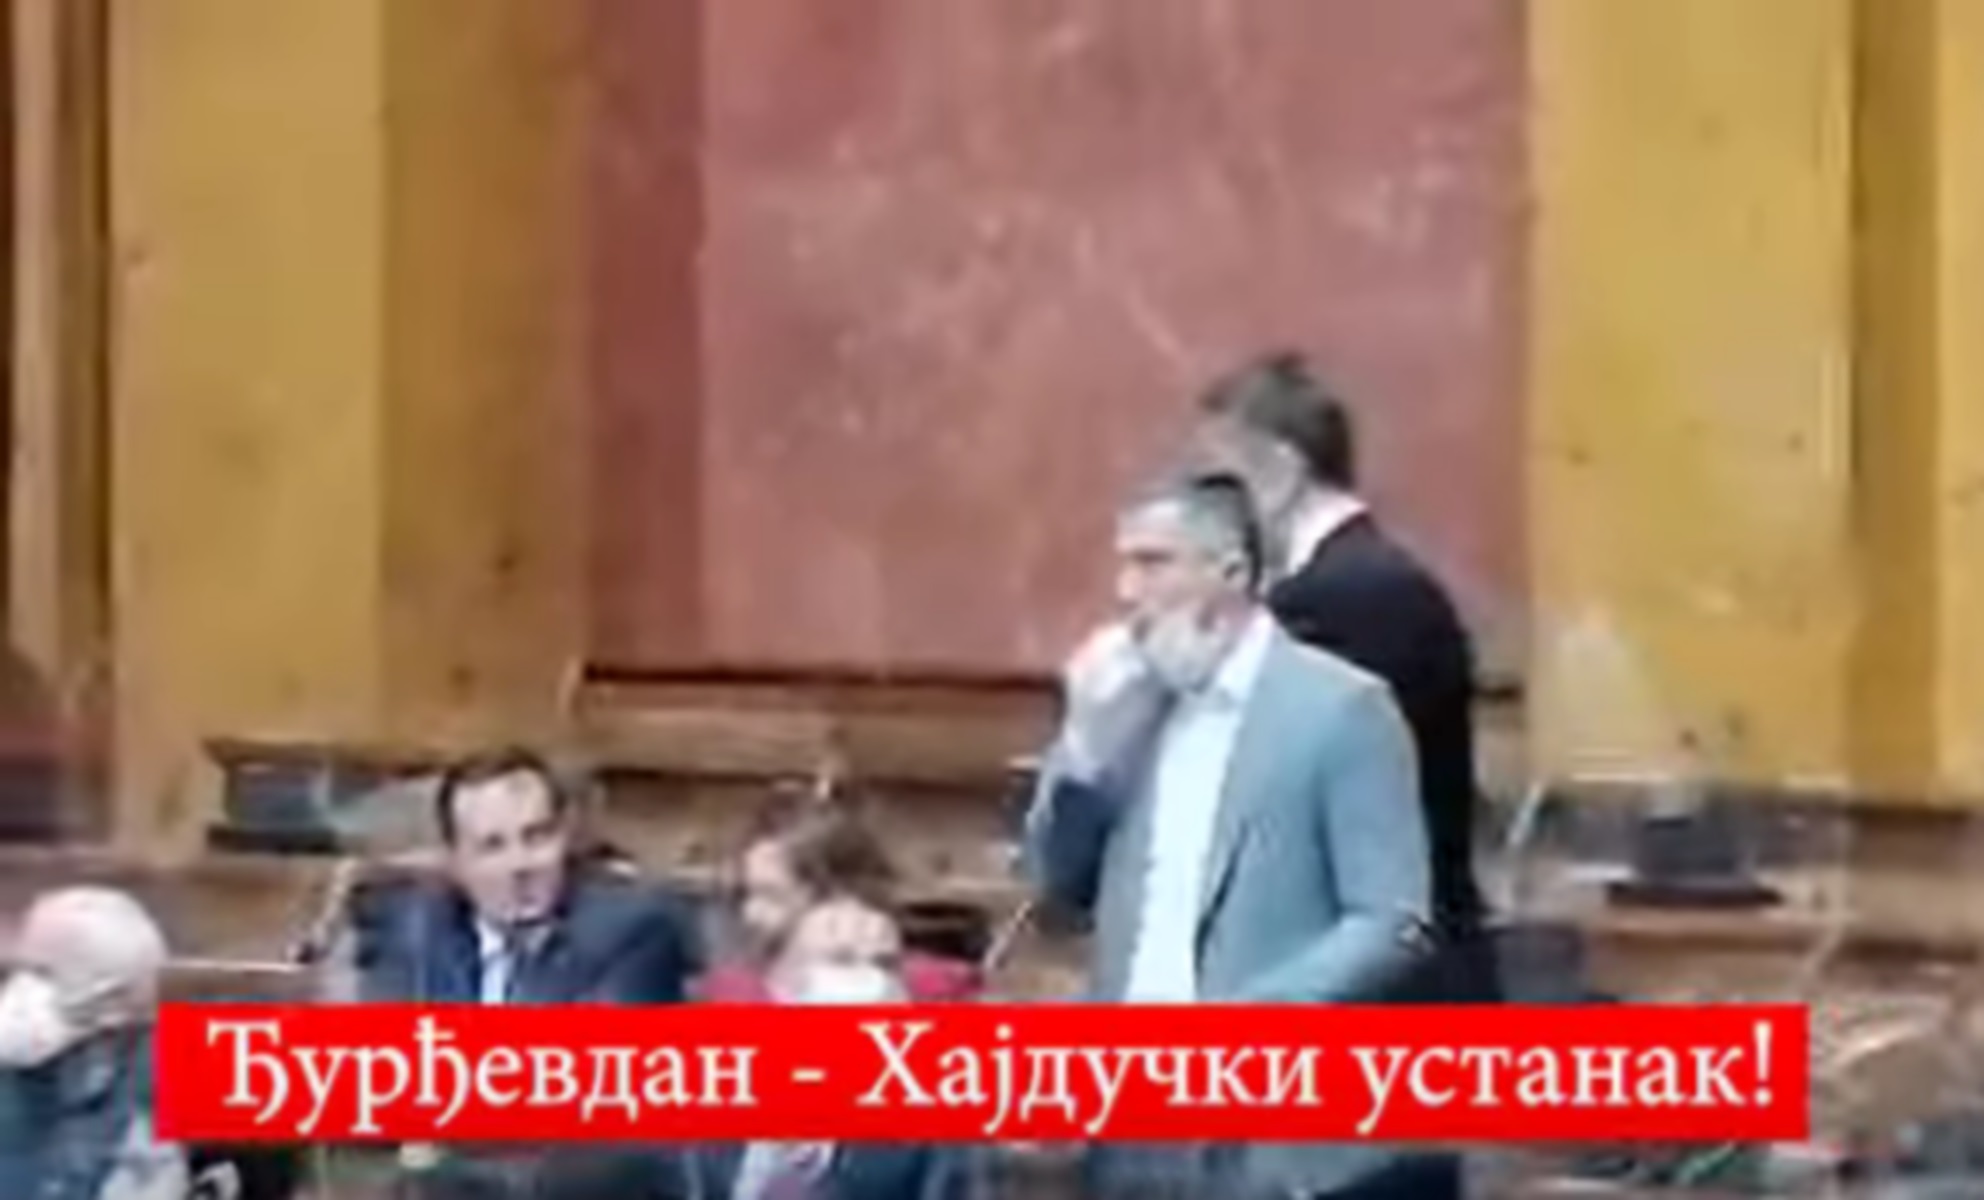 Χαμός στη βουλή της Σερβίας: Με σφυρίχτρα αρχηγός κόμματος – Τον έβγαλαν… σηκωτό (video)